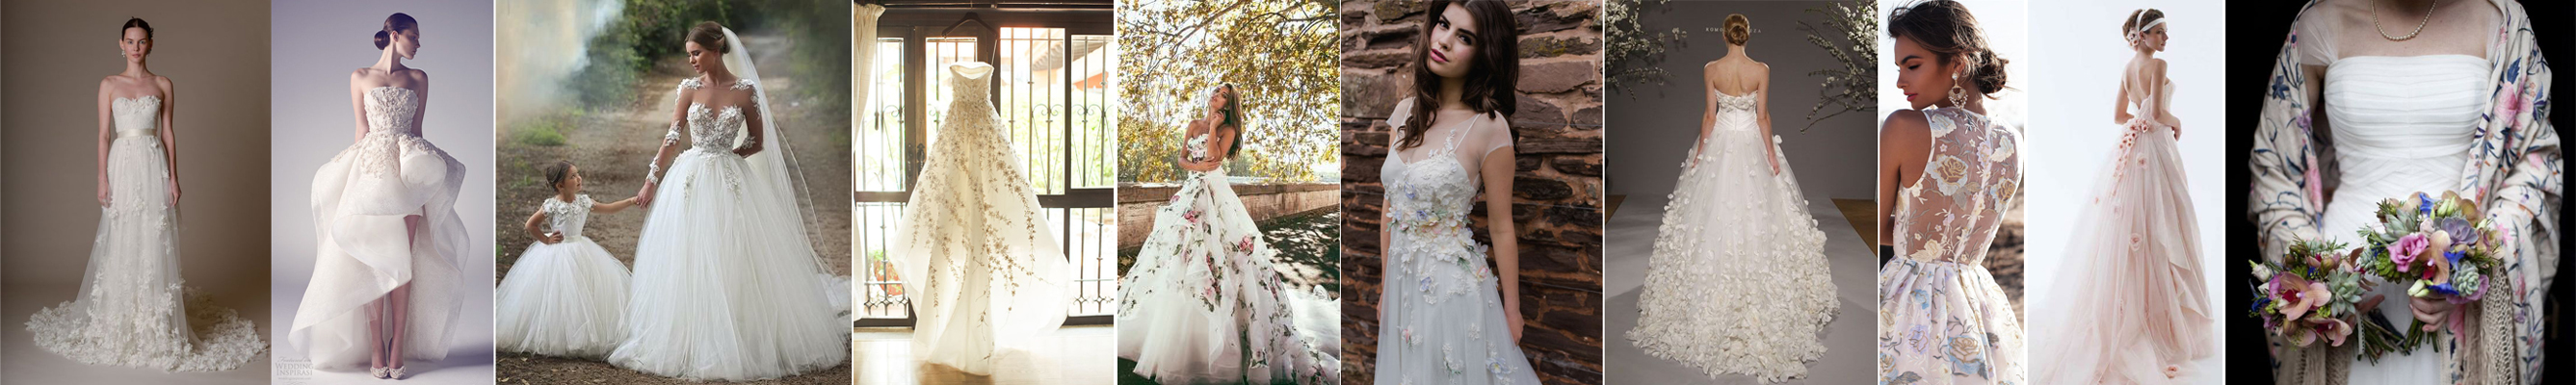 suknie ślubne z kwiatami 3D trendy 2016